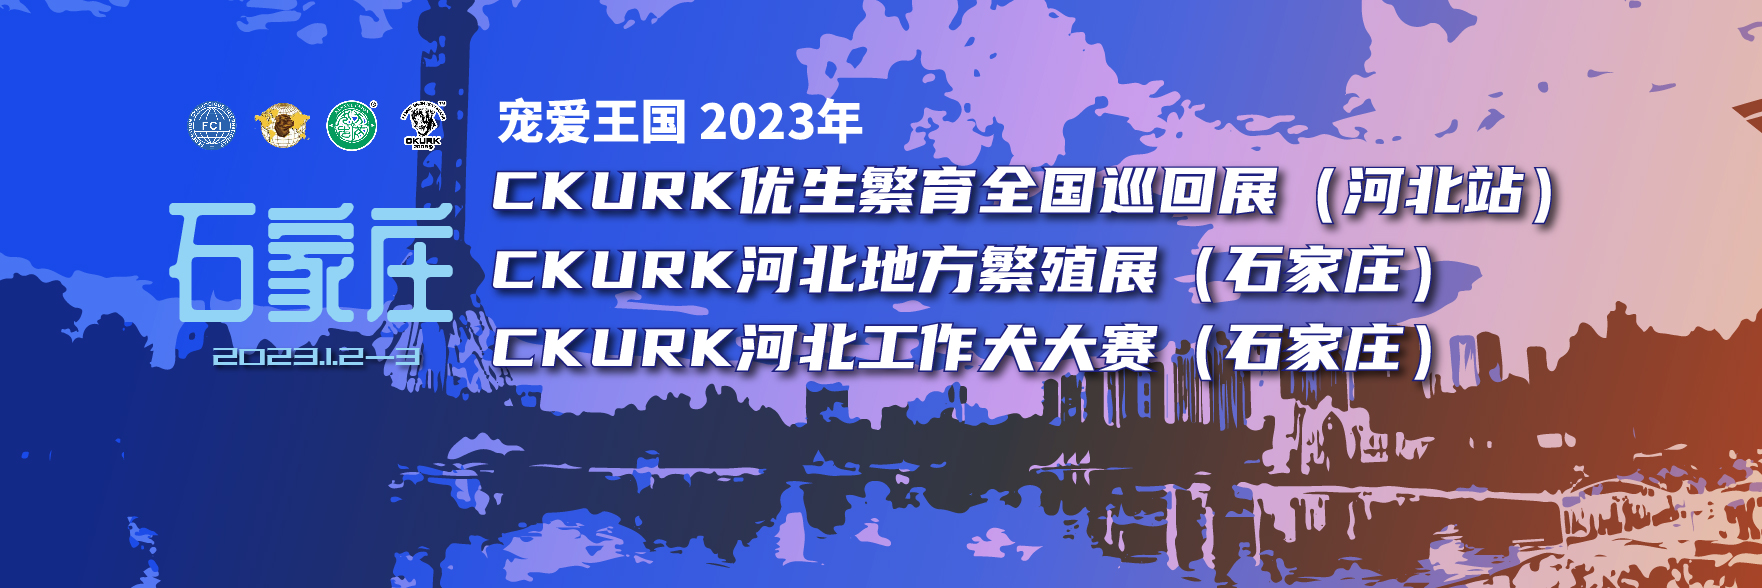 宠爱王国2023年CKURK优生繁育全国巡回展（河北站）、河北地方繁殖展（石家庄）、河北工作大赛